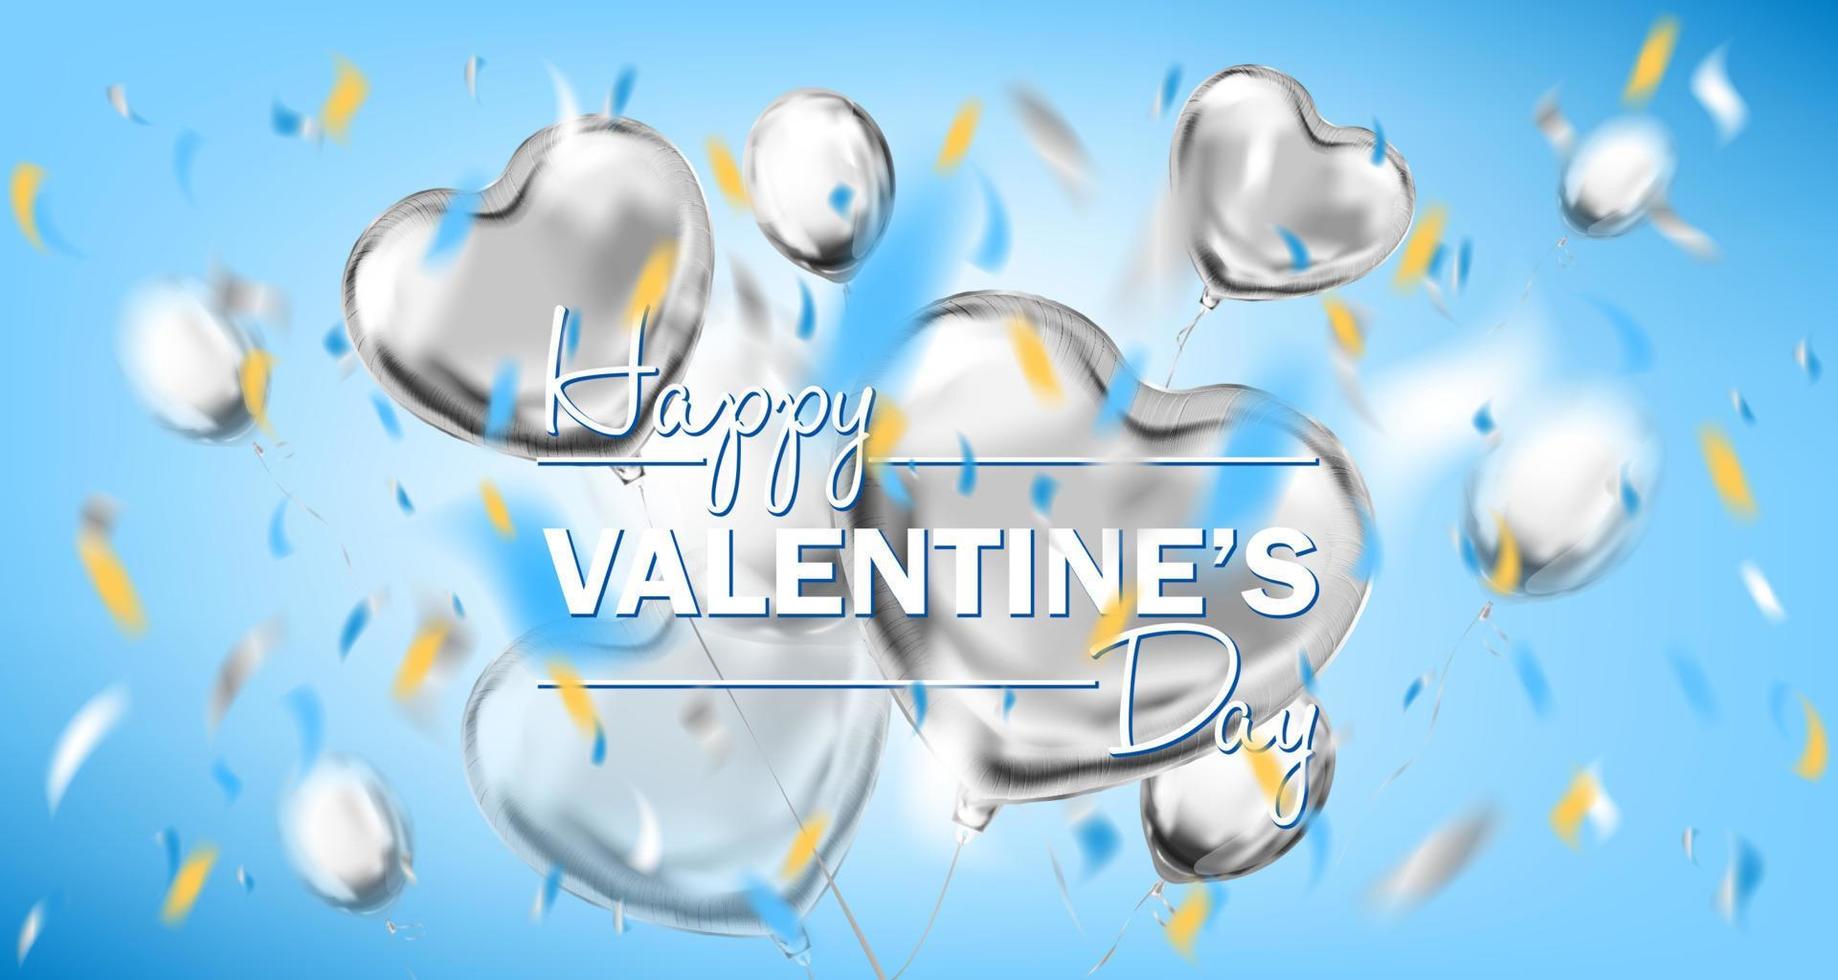 Lycklig valentines dag himmel blå kort med metallisk hjärta form ballonger vektor